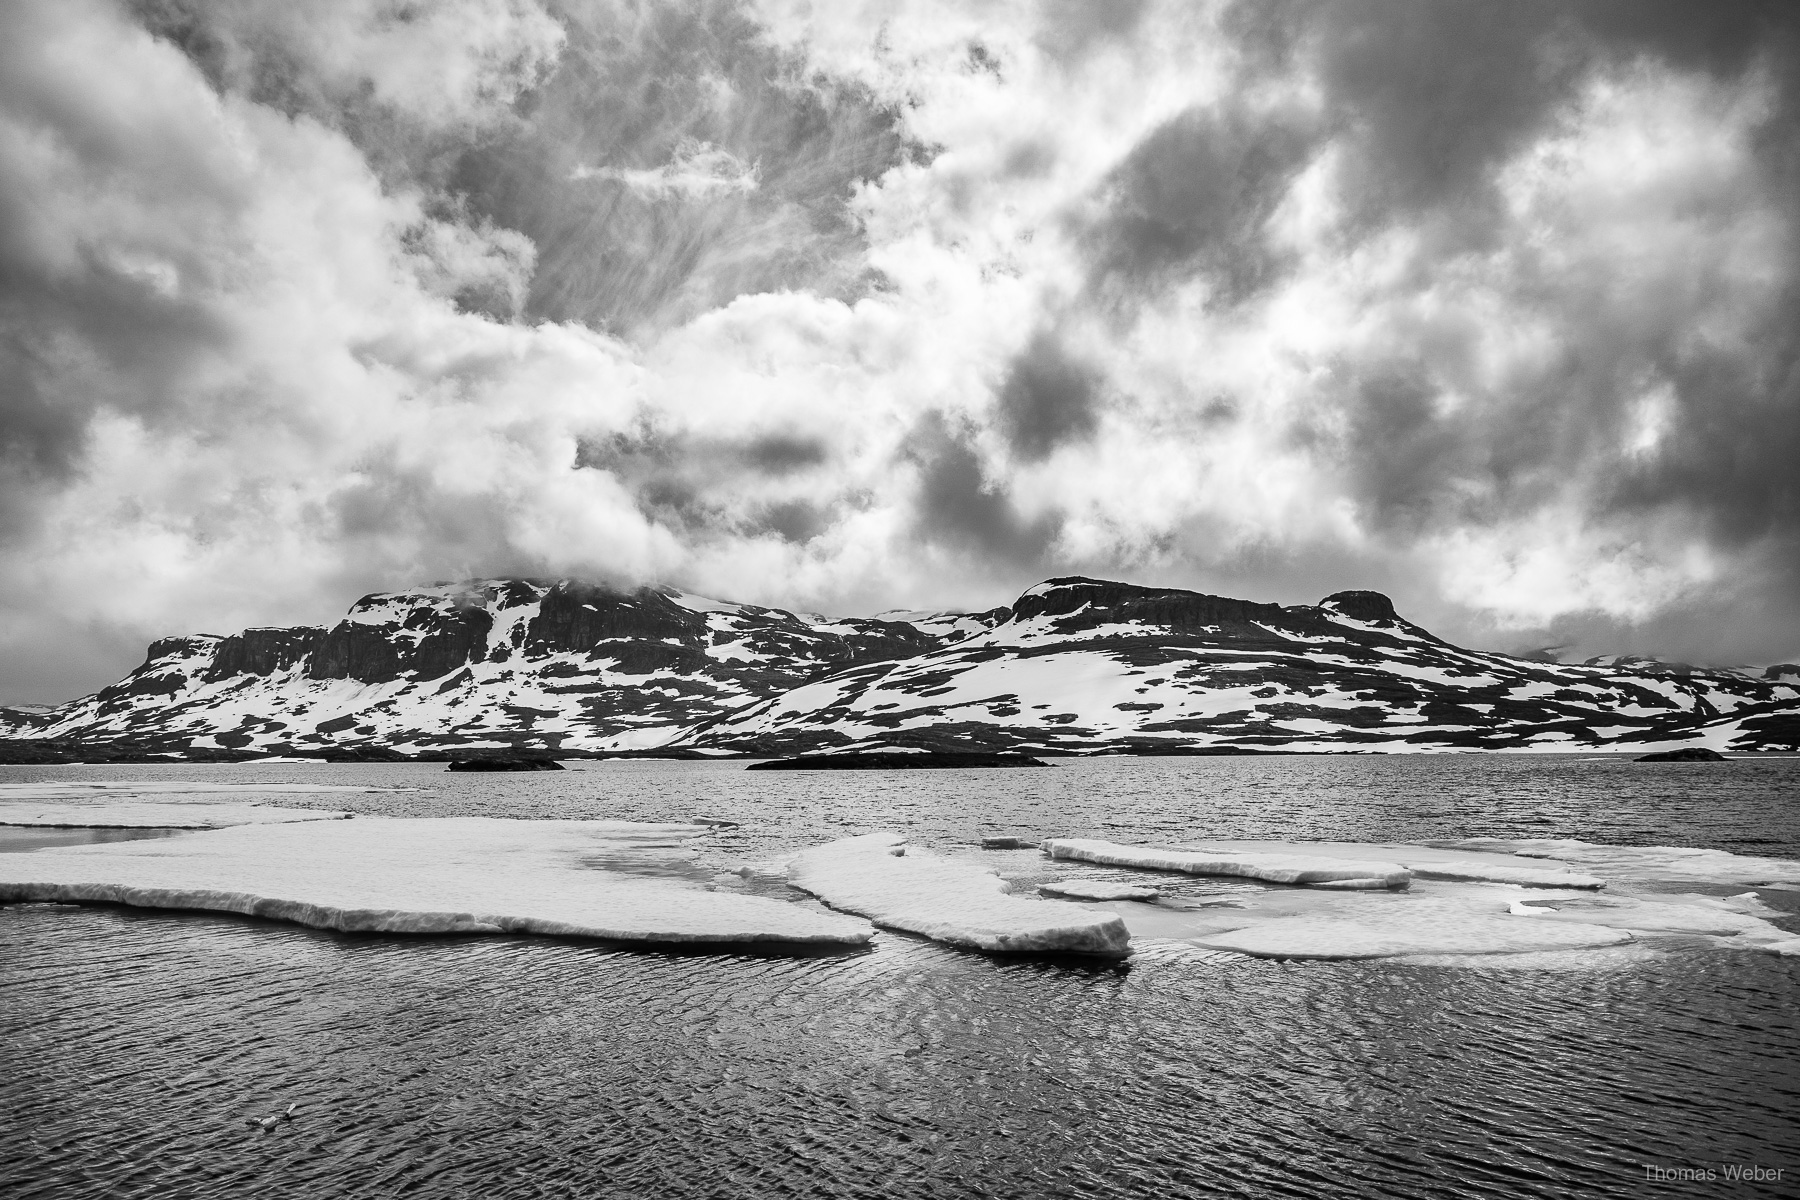 Fotograf Thomas Weber aus Oldenburg: Rundreise durch Norwegen